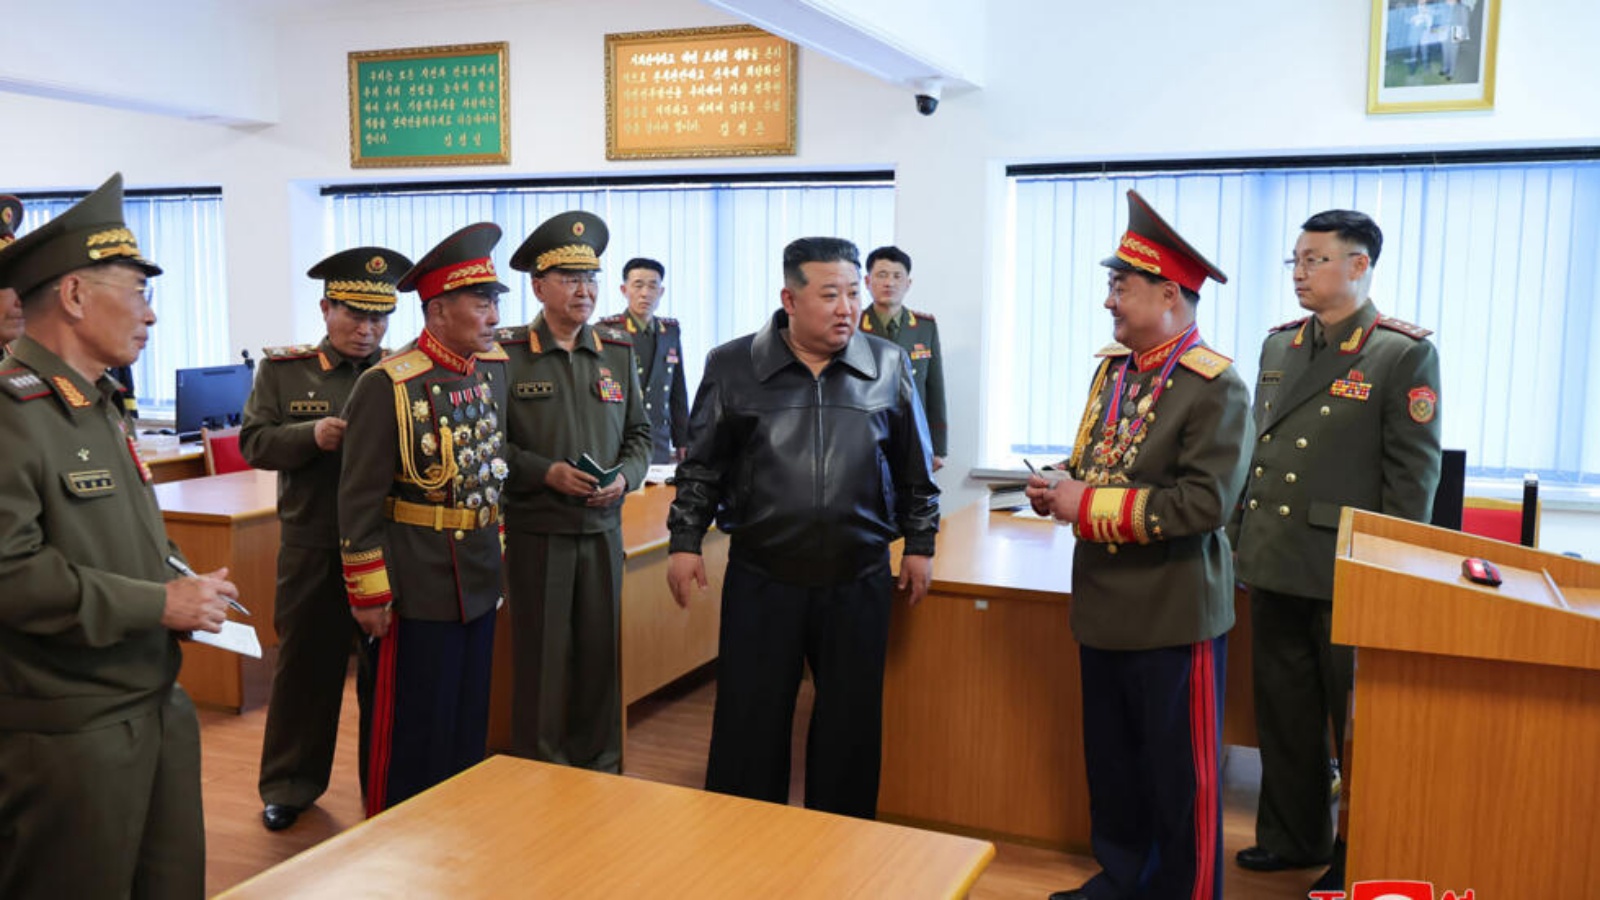 صورة نشرتها وكالة الانباء الكورية الشمالية ونقلتها وكالة الانباء الكورية الجنوبية في 11 نيسان (ابريل) للزعيم الكوري الشمالي كيم جونغ اون في زيارة للجامعة العسكرية والسياسية في غرب بيونغ يانغ 